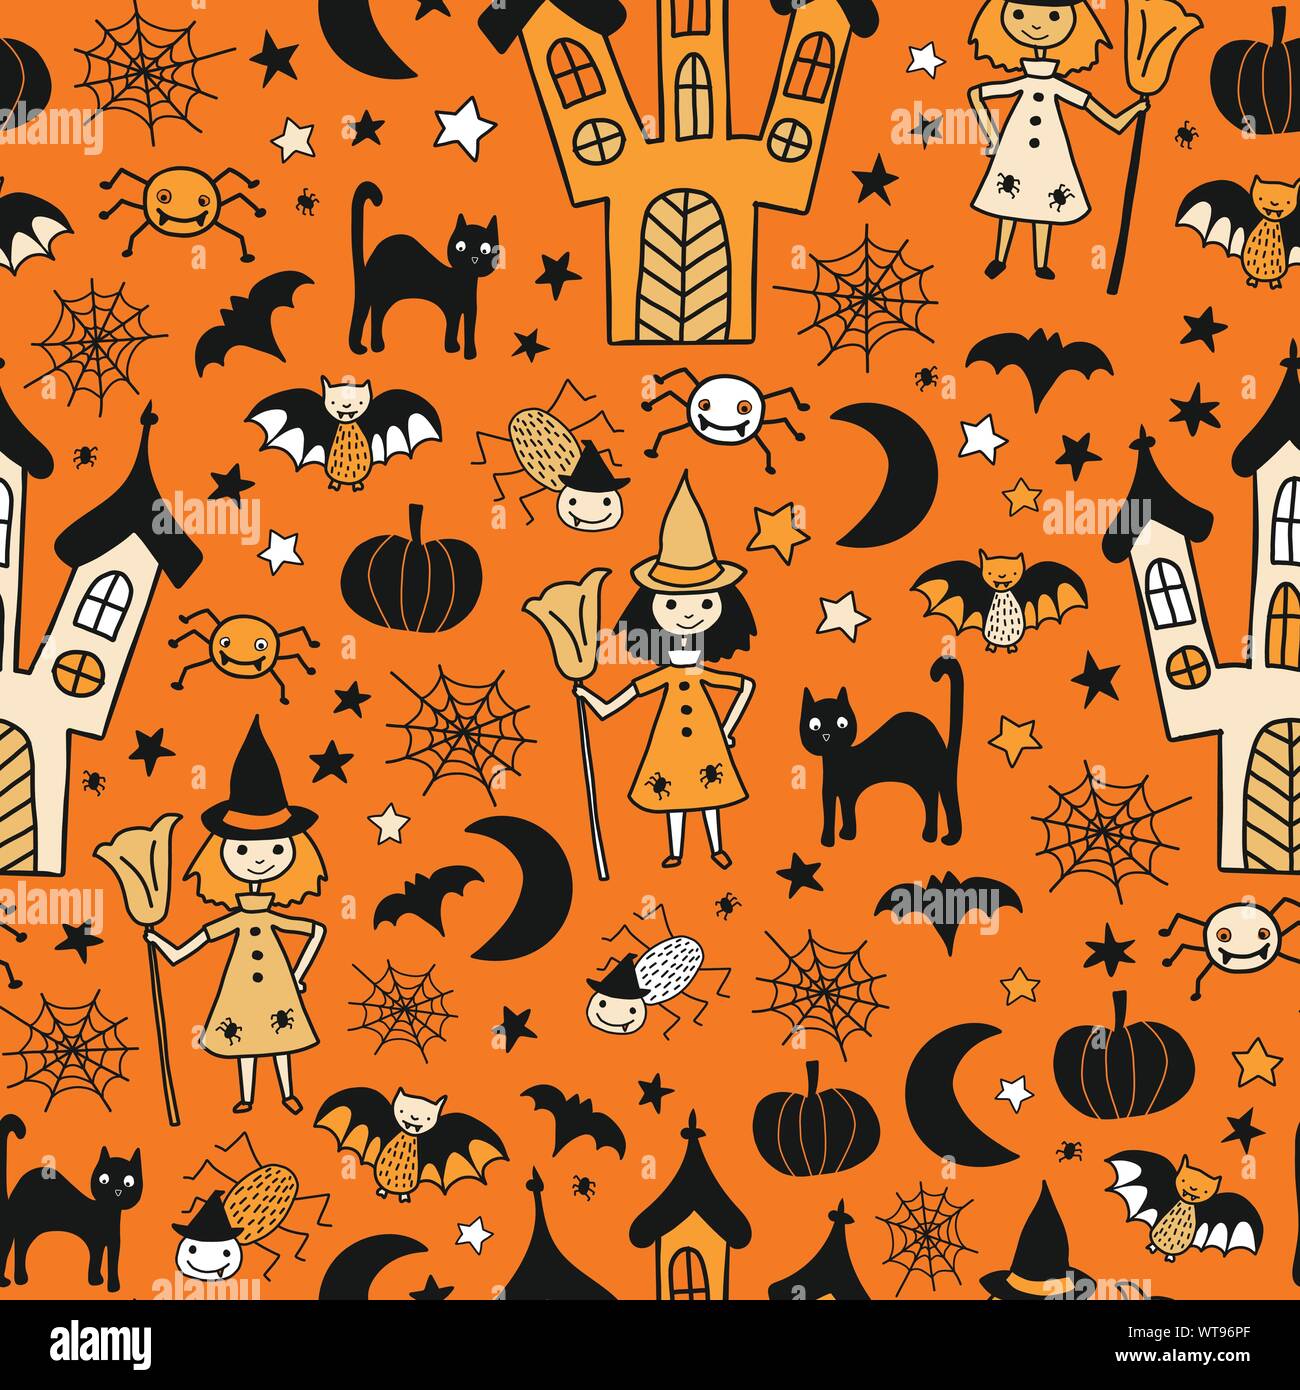 Các bé yêu thích Halloween chắc chắn sẽ thích những hình ảnh dễ thương về đêm Halloween này. Hãy xem qua những thiết kế vui nhộn dành cho trẻ em với chủ đề Halloween và thưởng thức cùng bé.